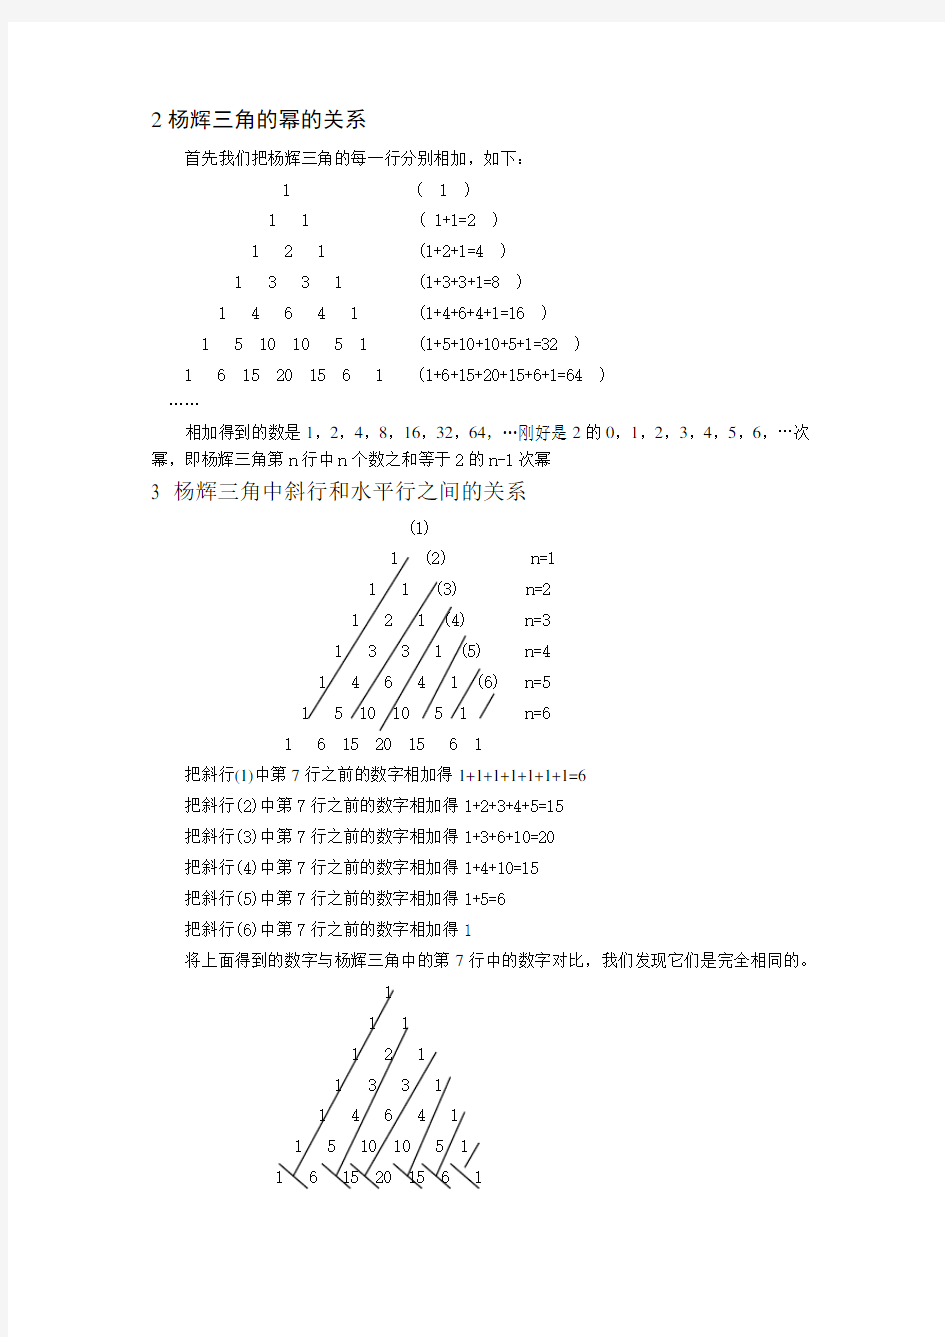 杨辉三角的规律以及推导公式精品资料